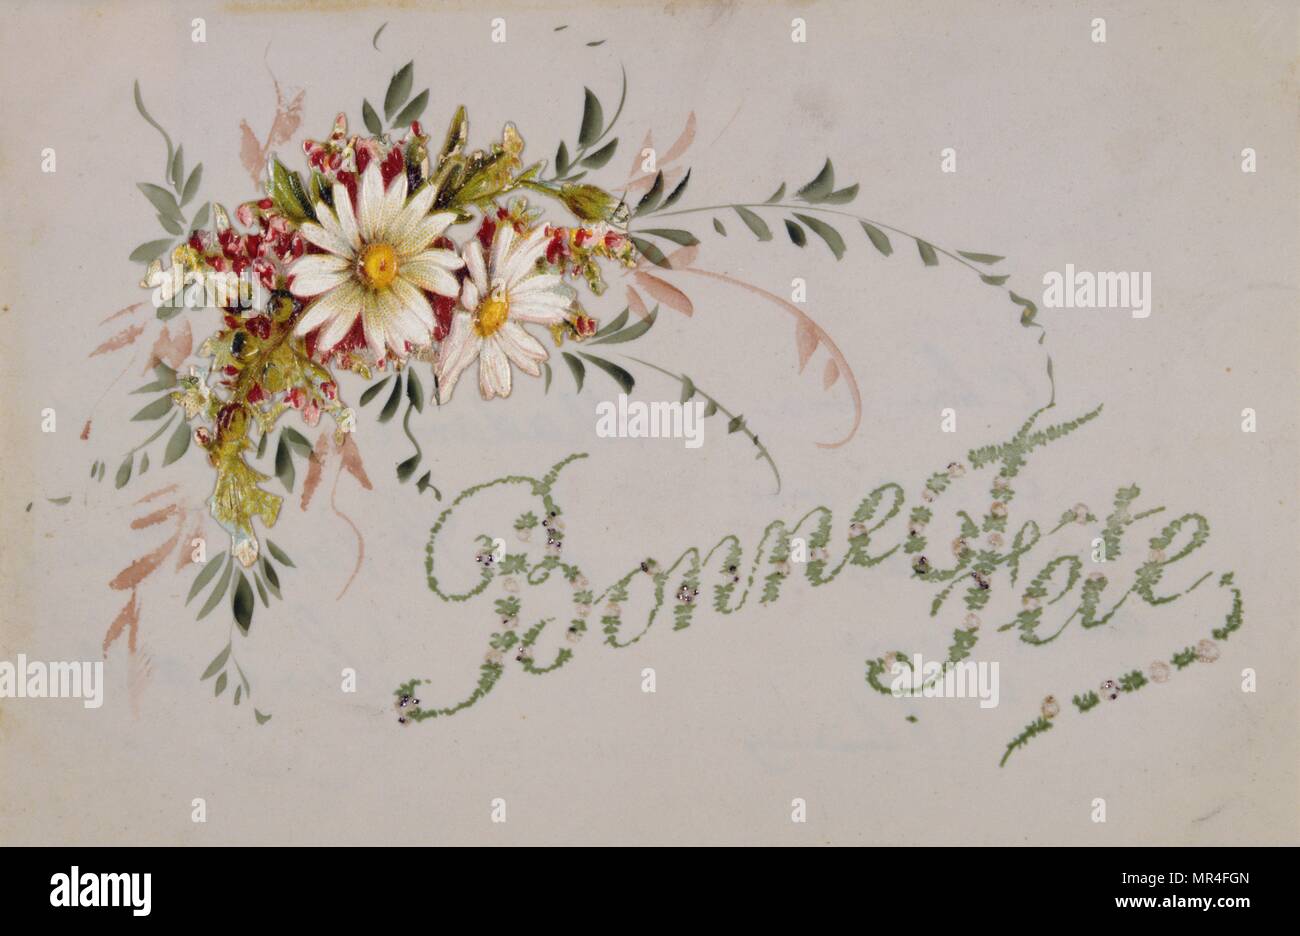 Carte postale française avec des images de fleurs 1900 Banque D'Images